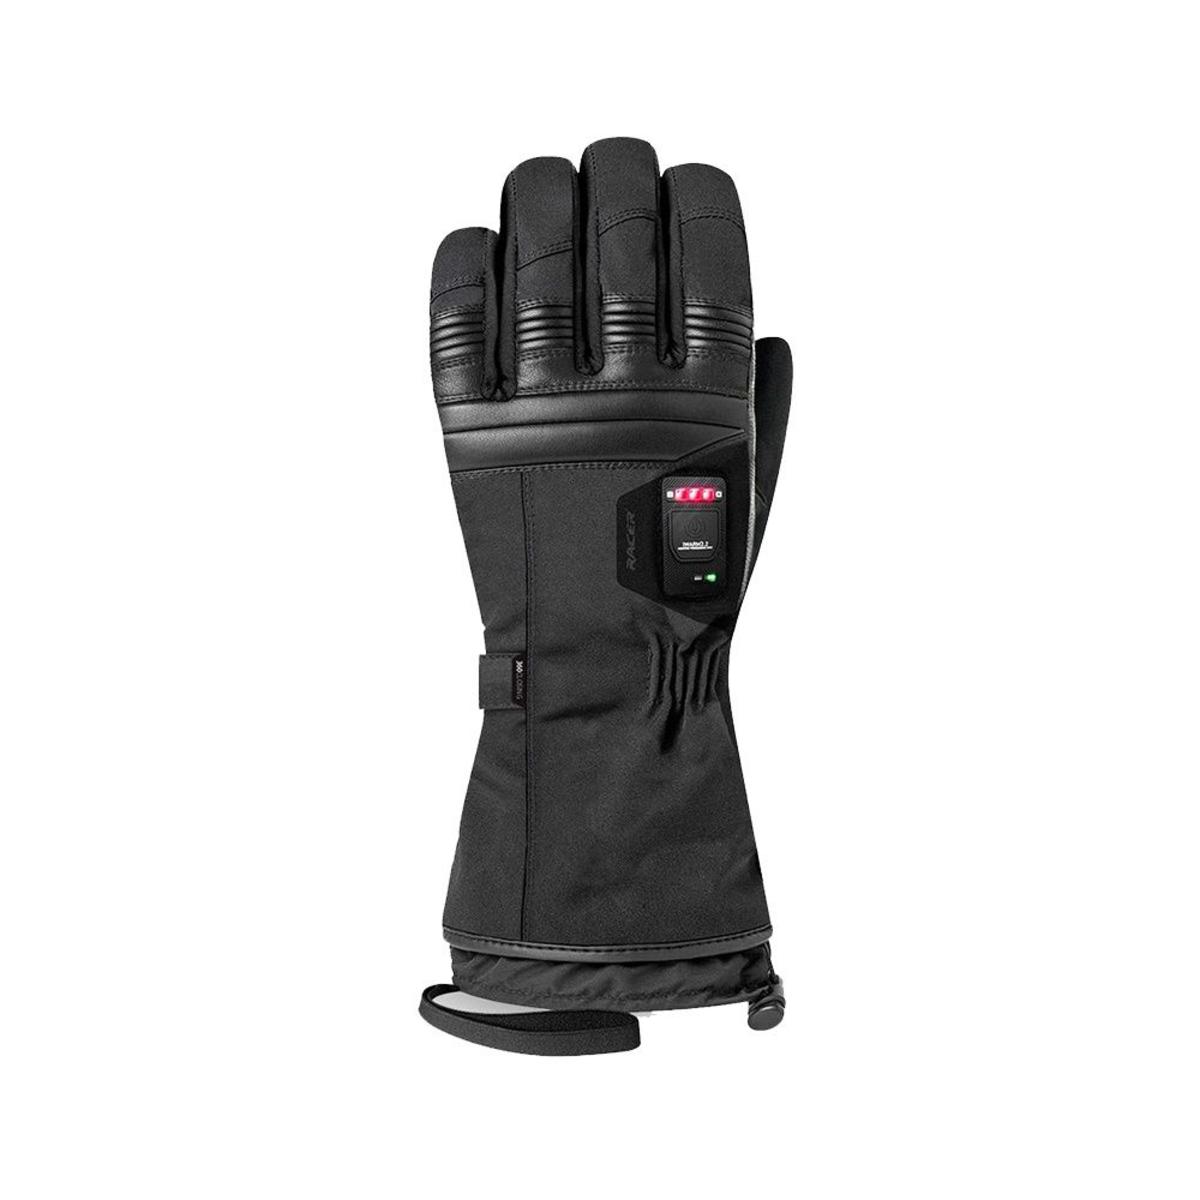 Racer Men's Connectic 4 Waterproof Heated Gloves